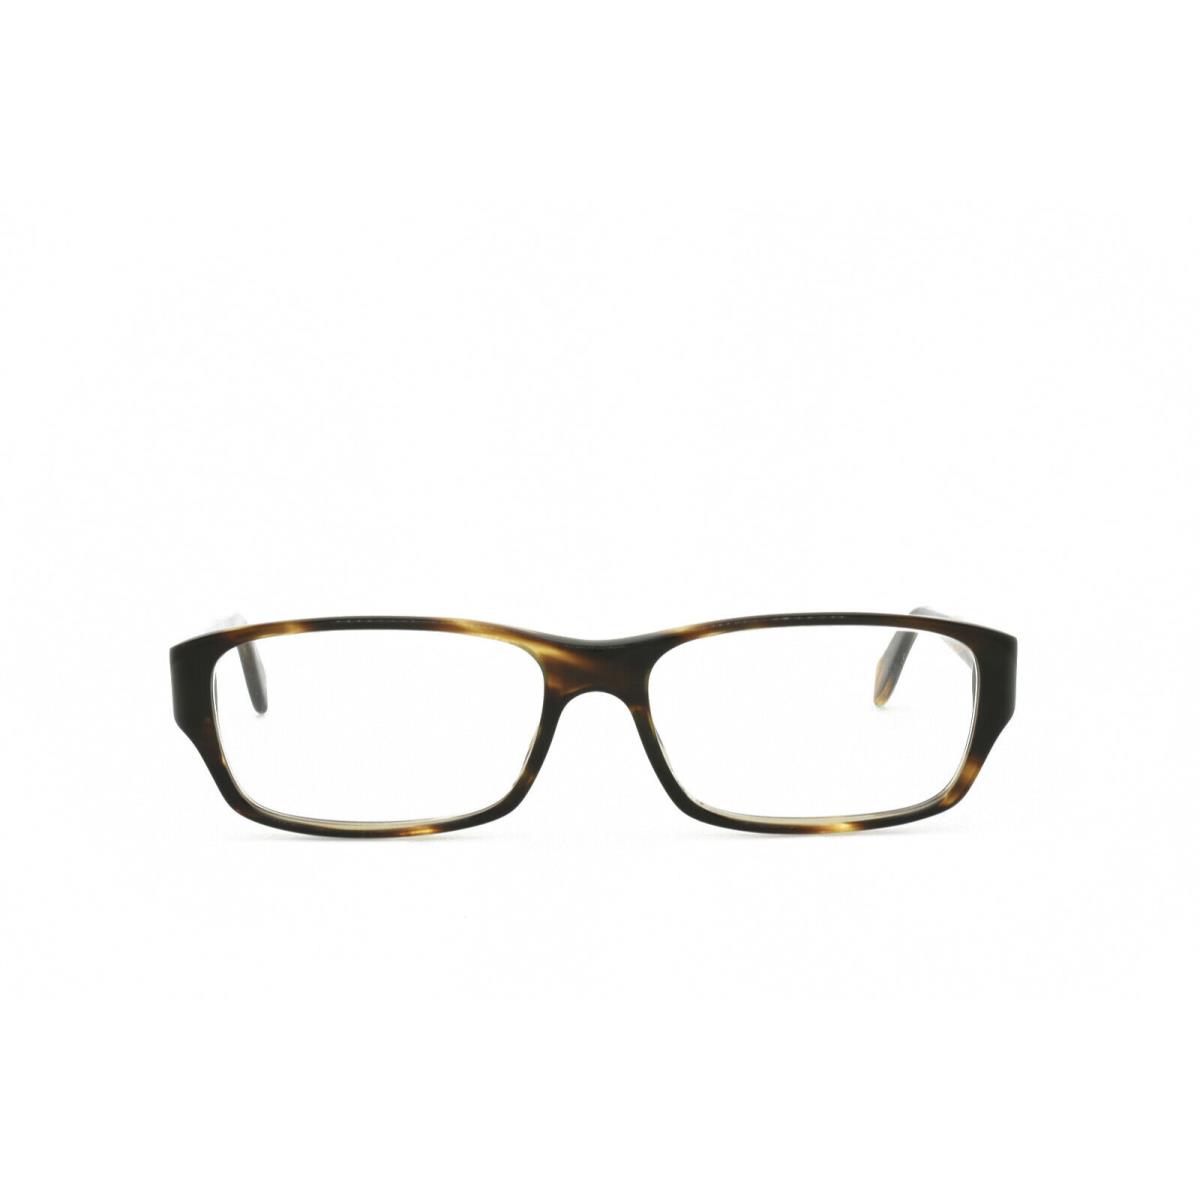 Oliver Peoples Shae 5163 1003 Eyeglasses Frames Only 54-15-140